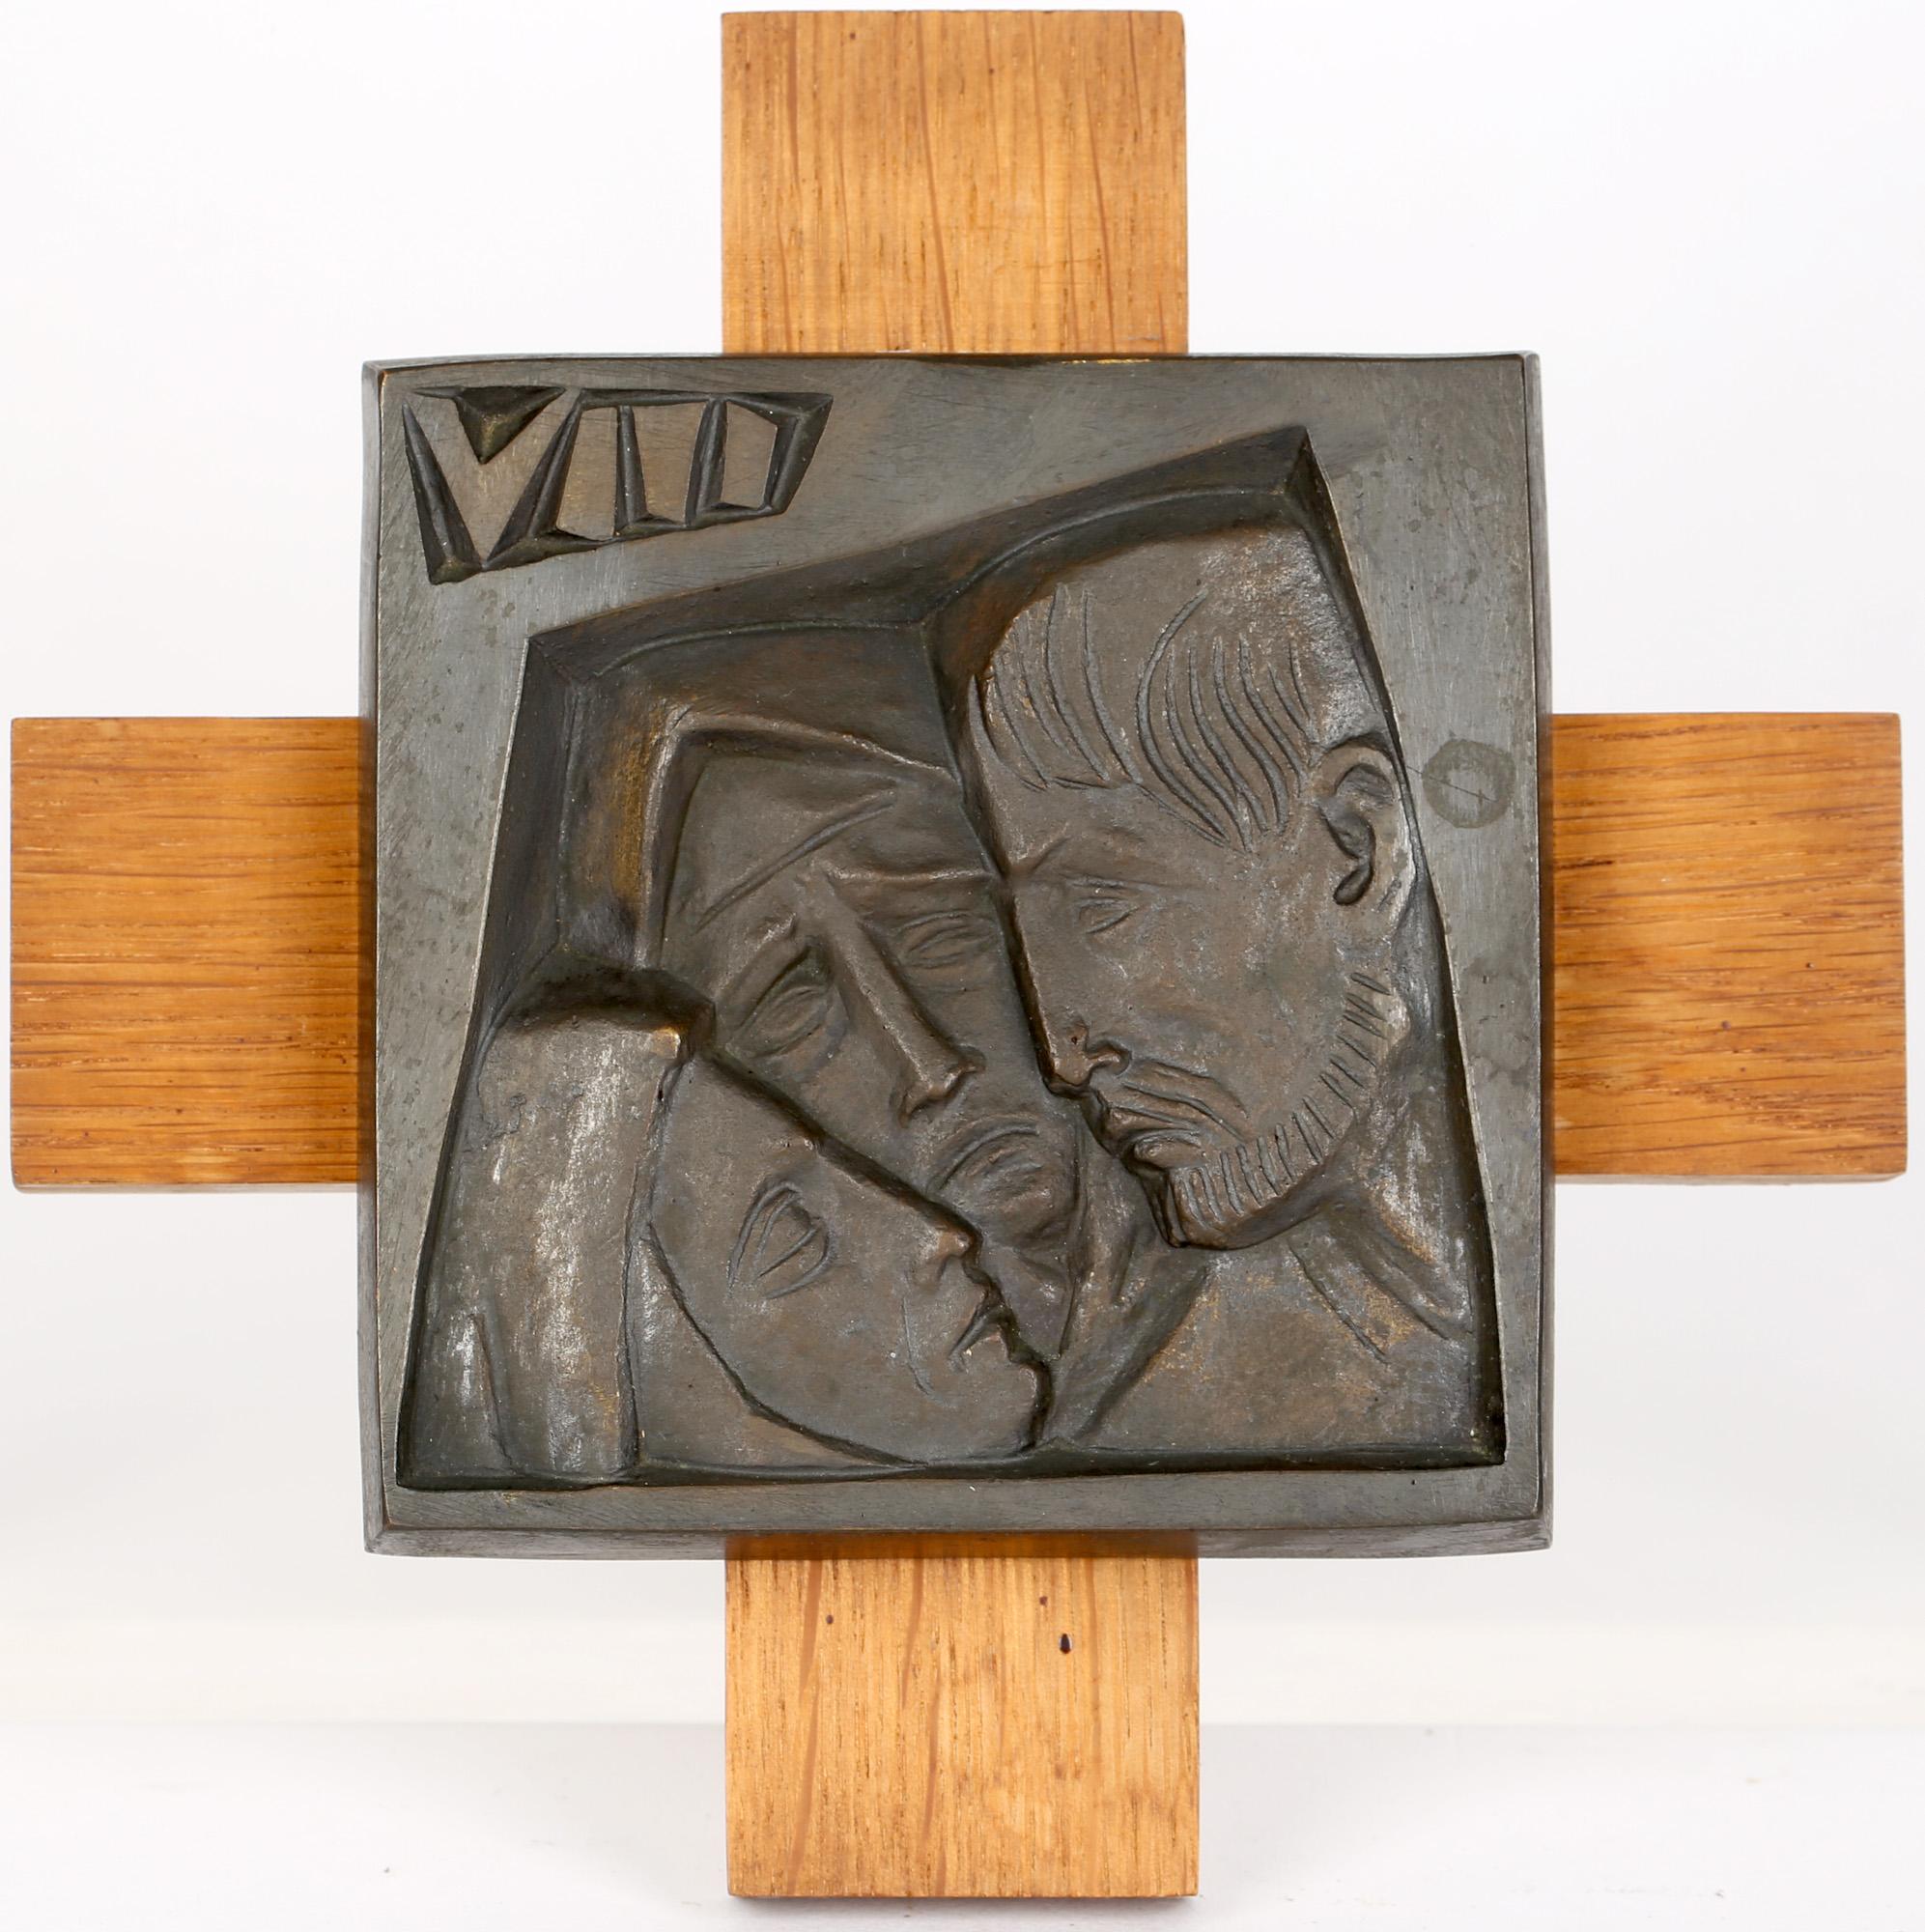 Seltene und außergewöhnliche französische Bronzeskulptur mit den vierzehn Kreuzwegstationen von René Gourdon (1910-1992) aus der Zeit um 1950. René Gourdon war ein bekannter französischer Bildhauer und Künstler, der vor allem für seine religiösen